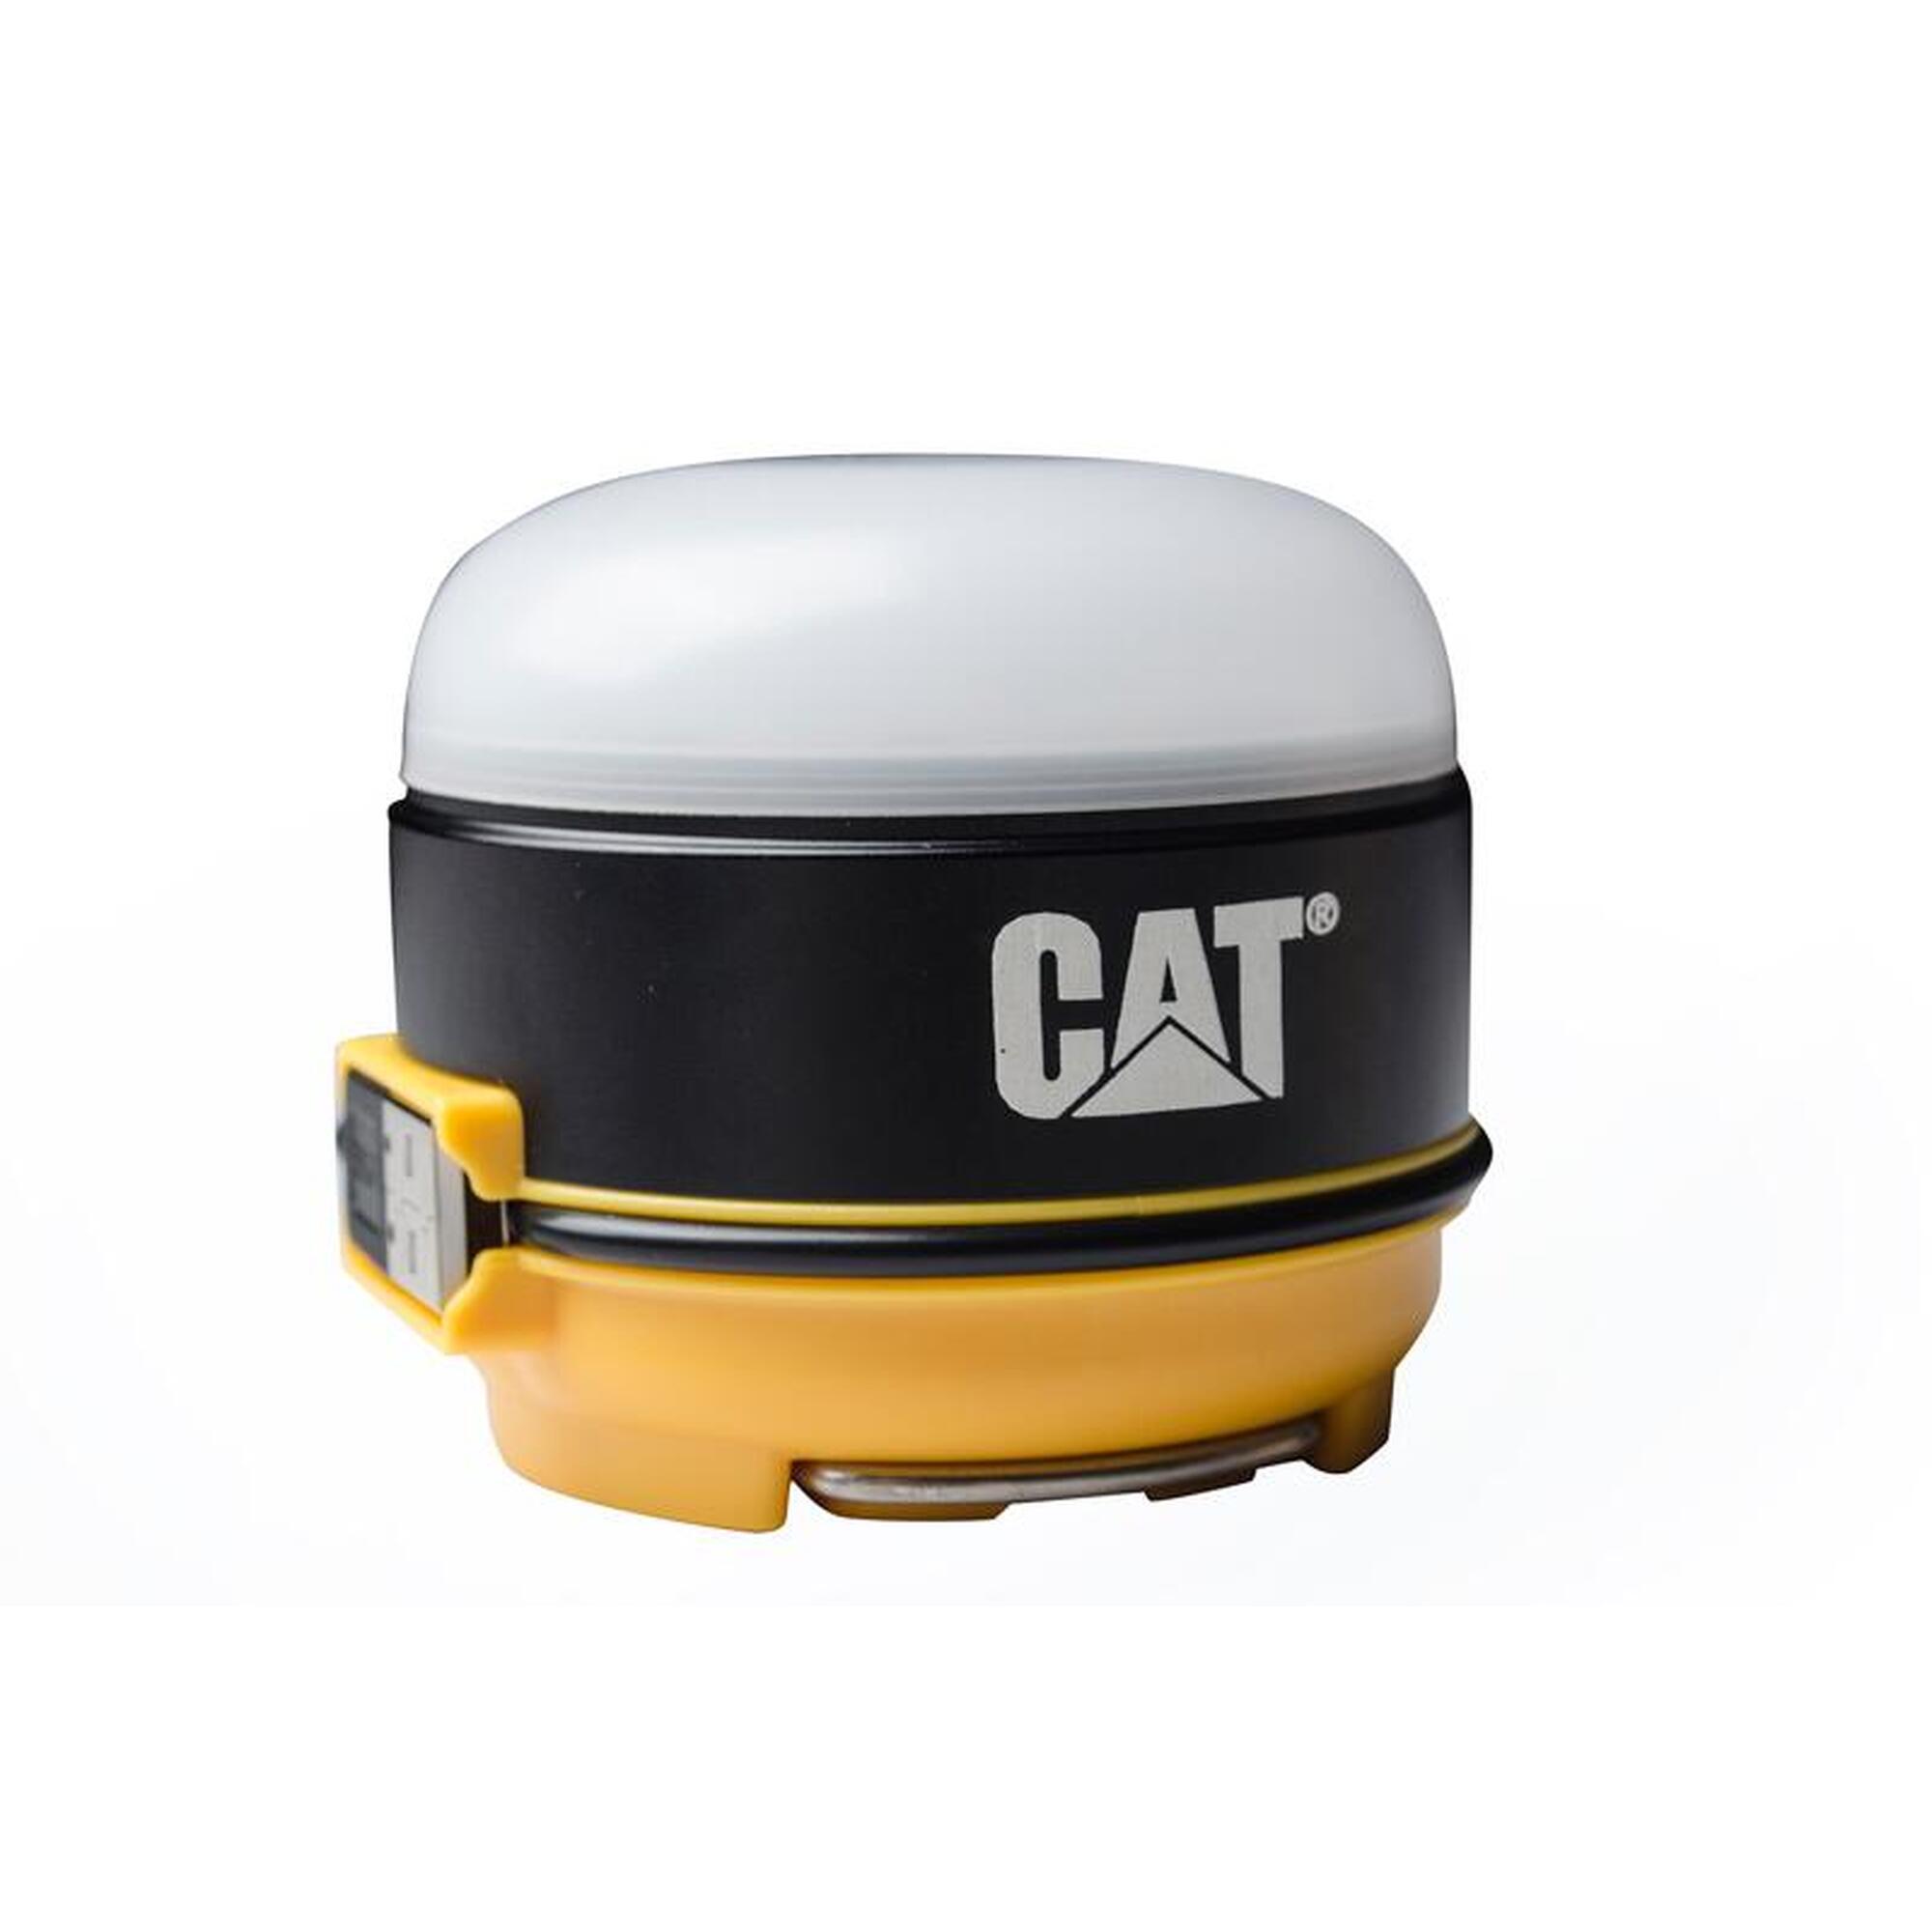 Micro linterna CAT recargable CT6525